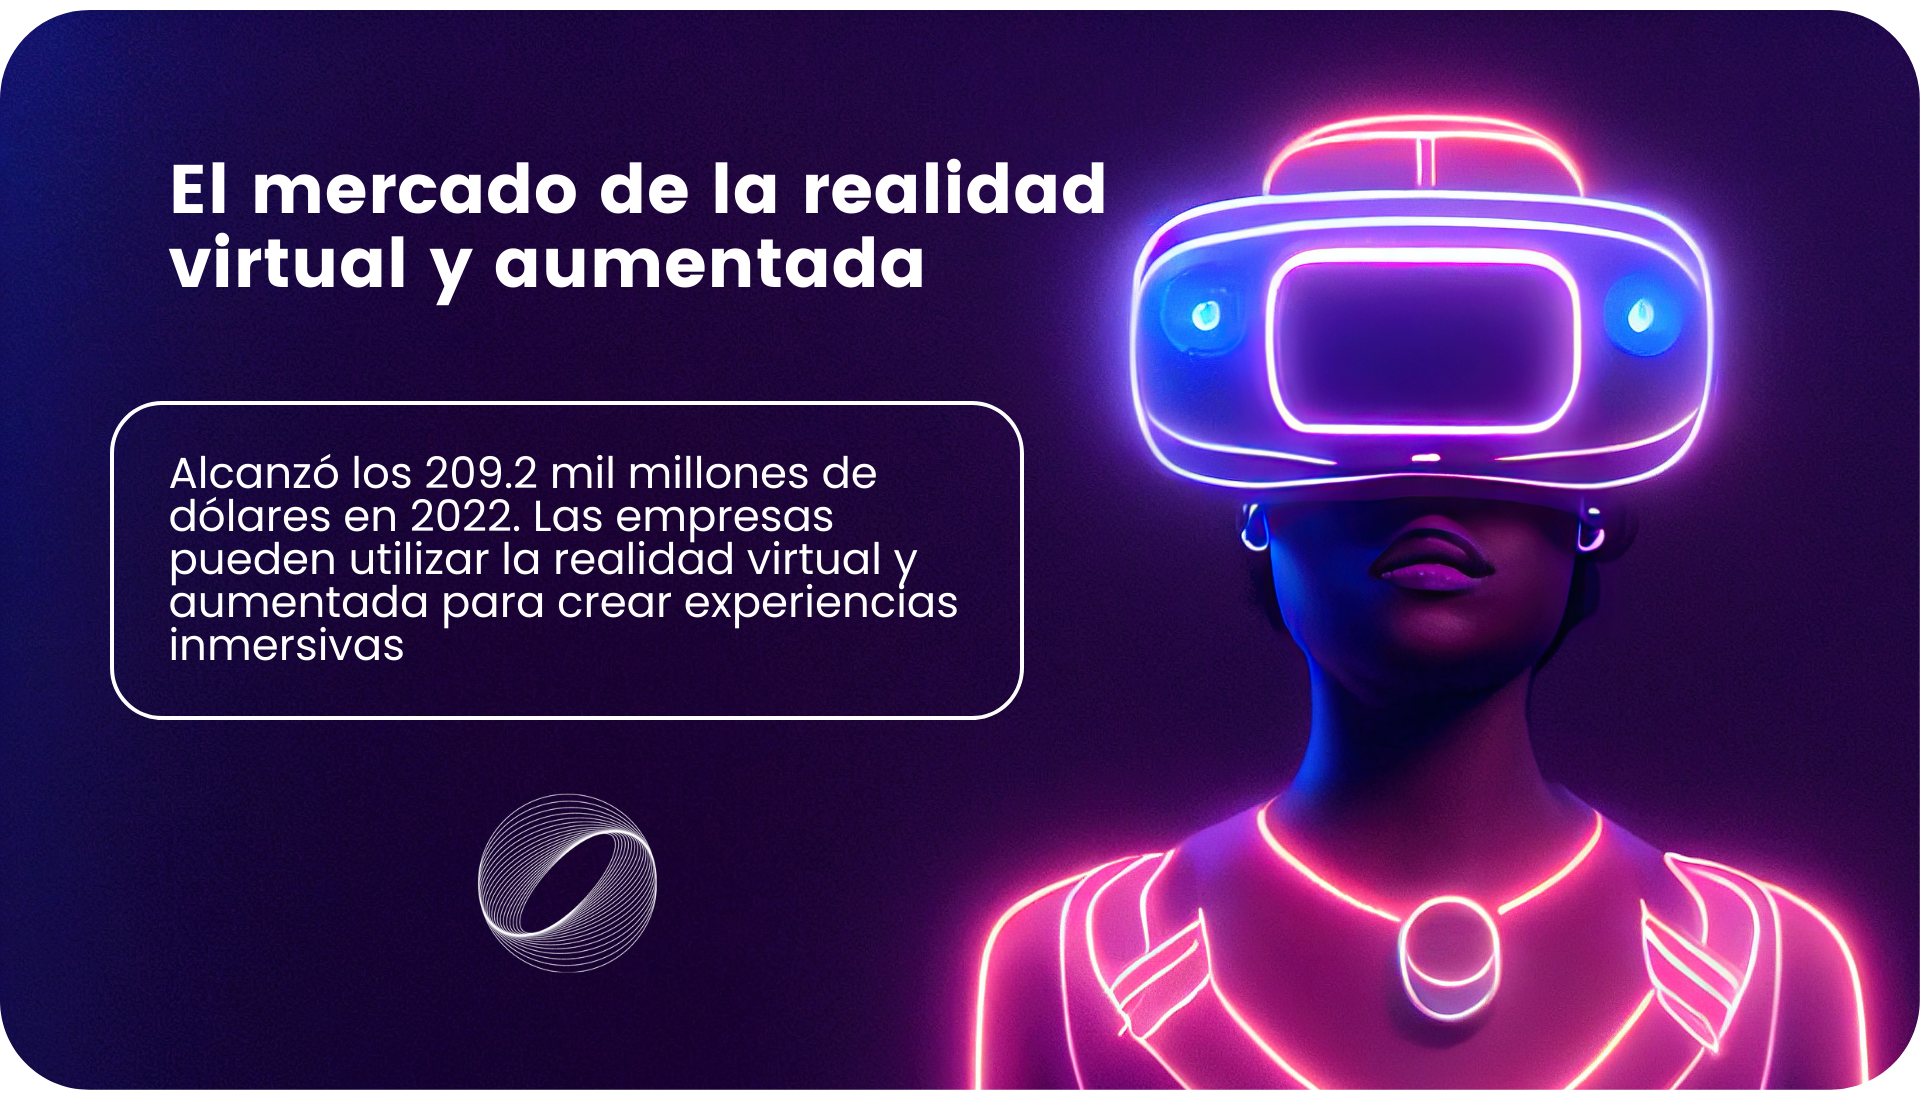 El mercado de la realidad virtual y aumentada